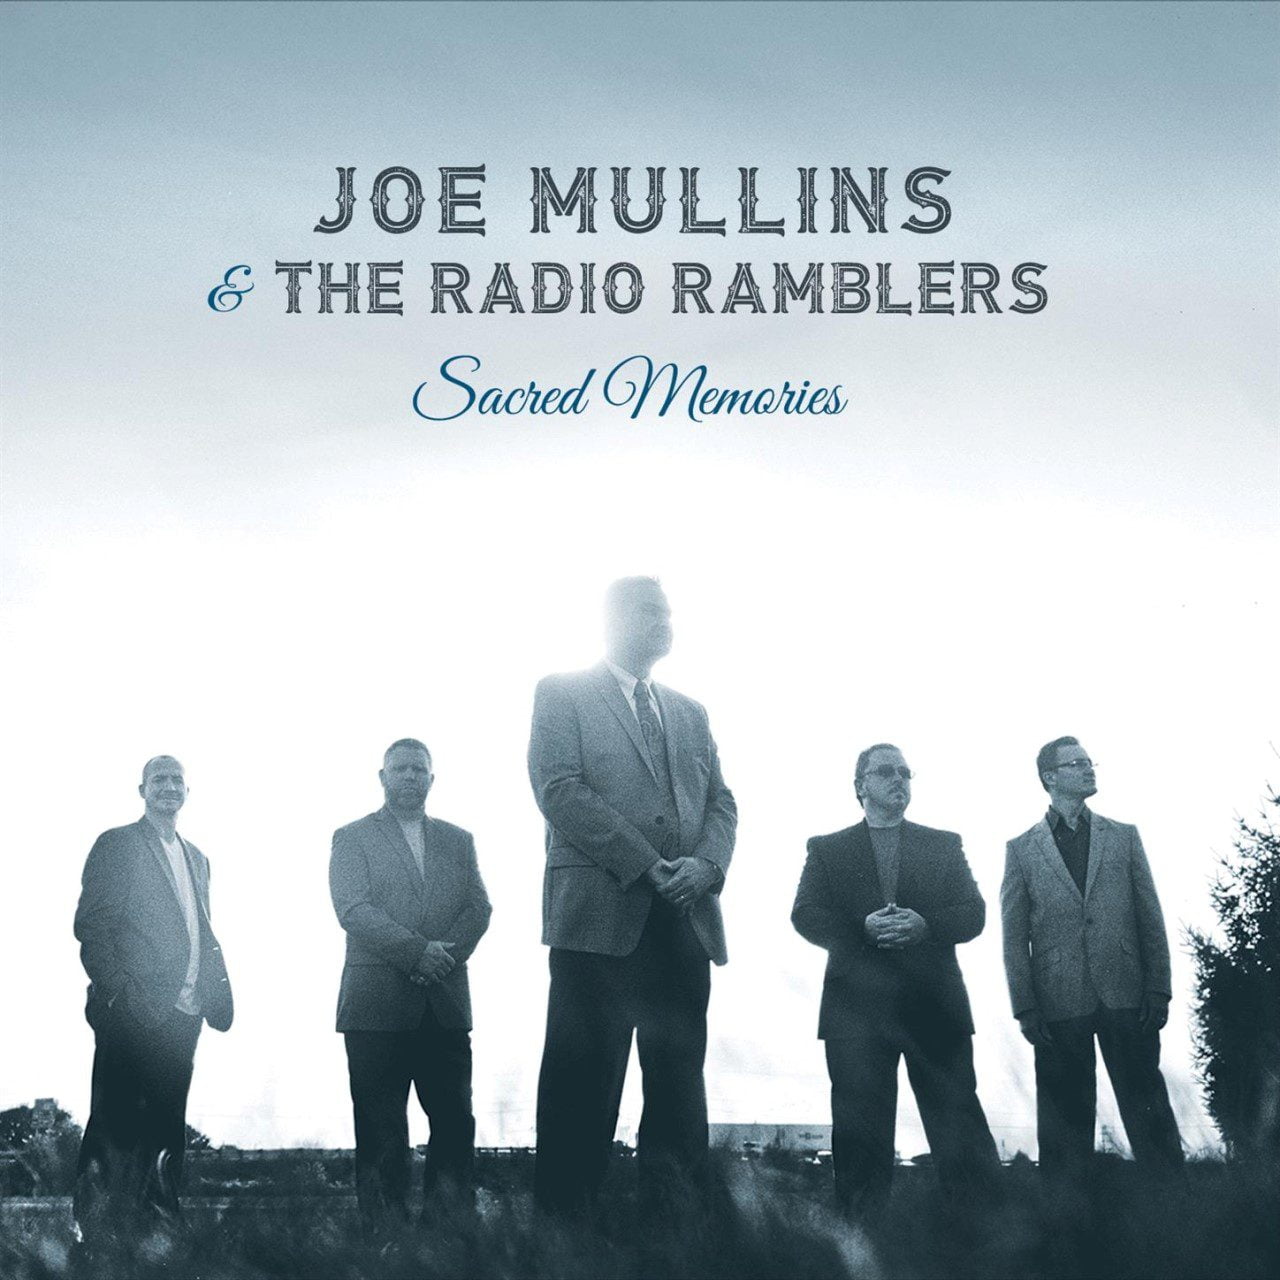 Joe Mullins & The Radio Ramblers - Sacred Memories cover album